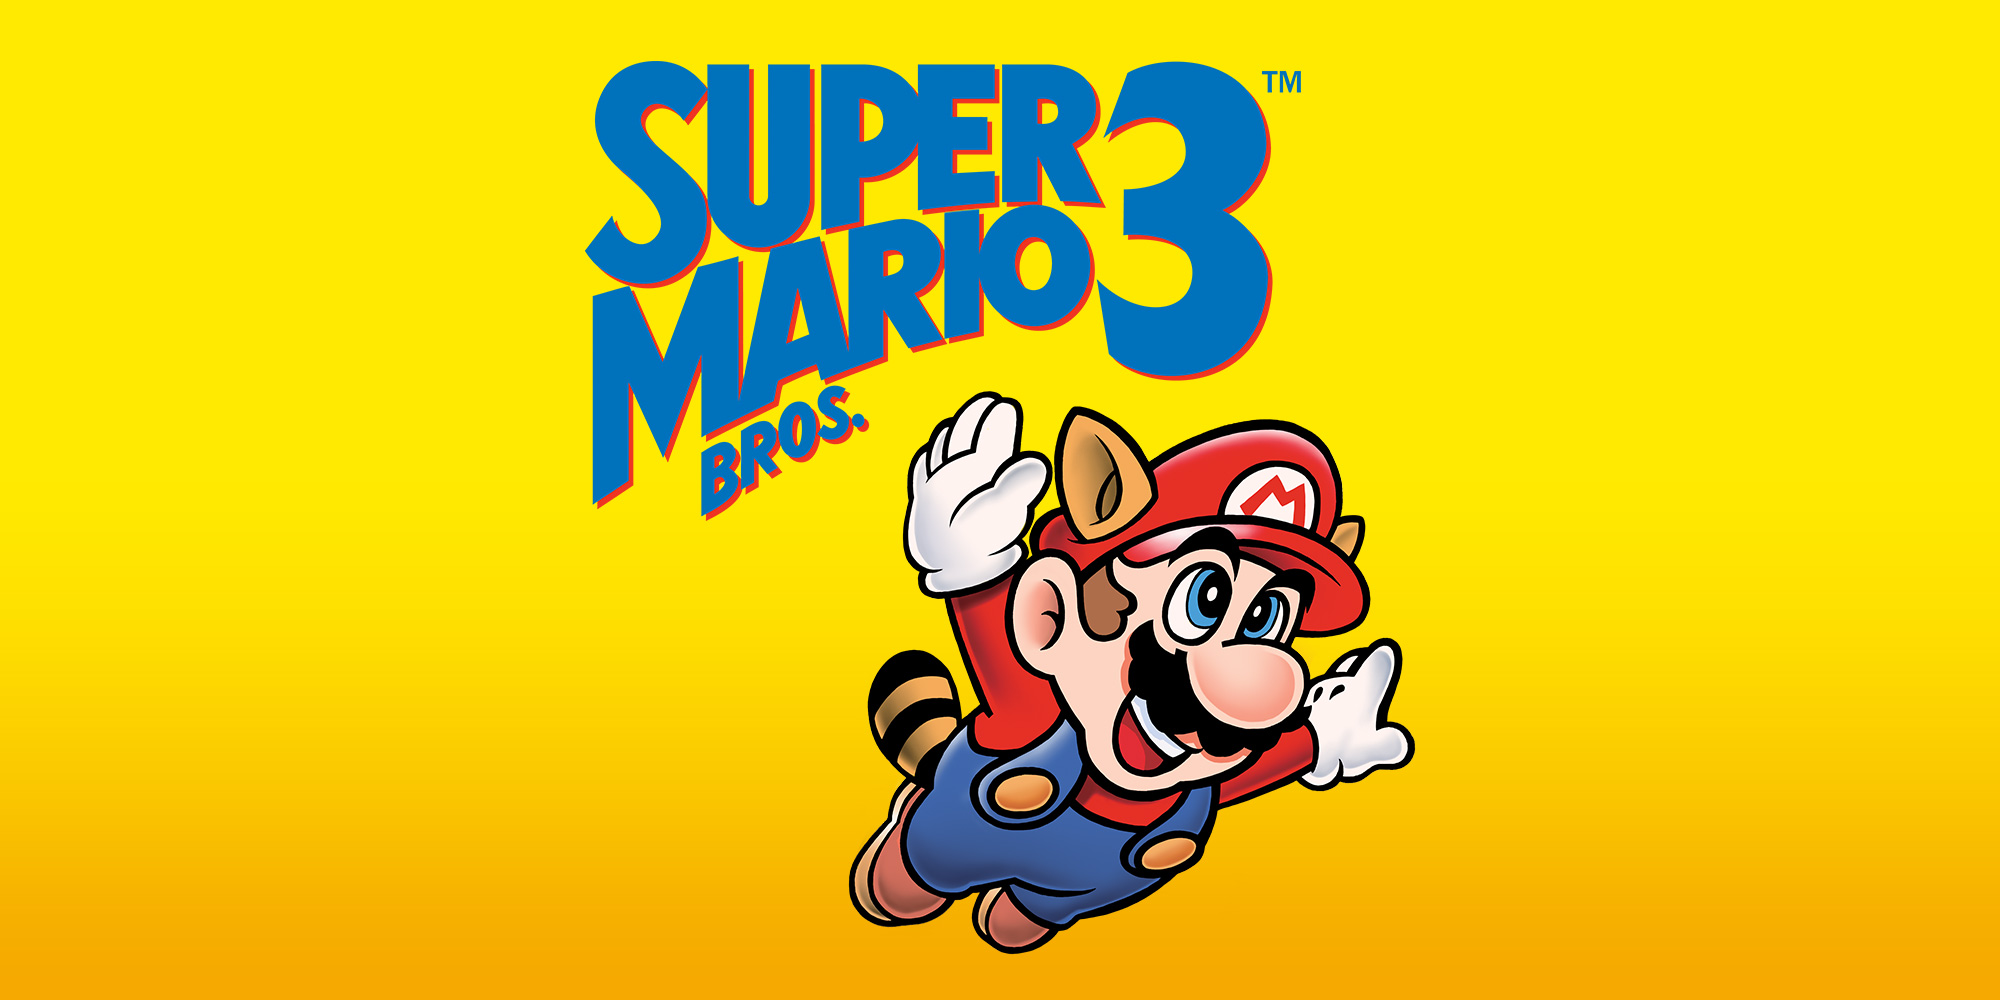 super mario 64 emulator game download